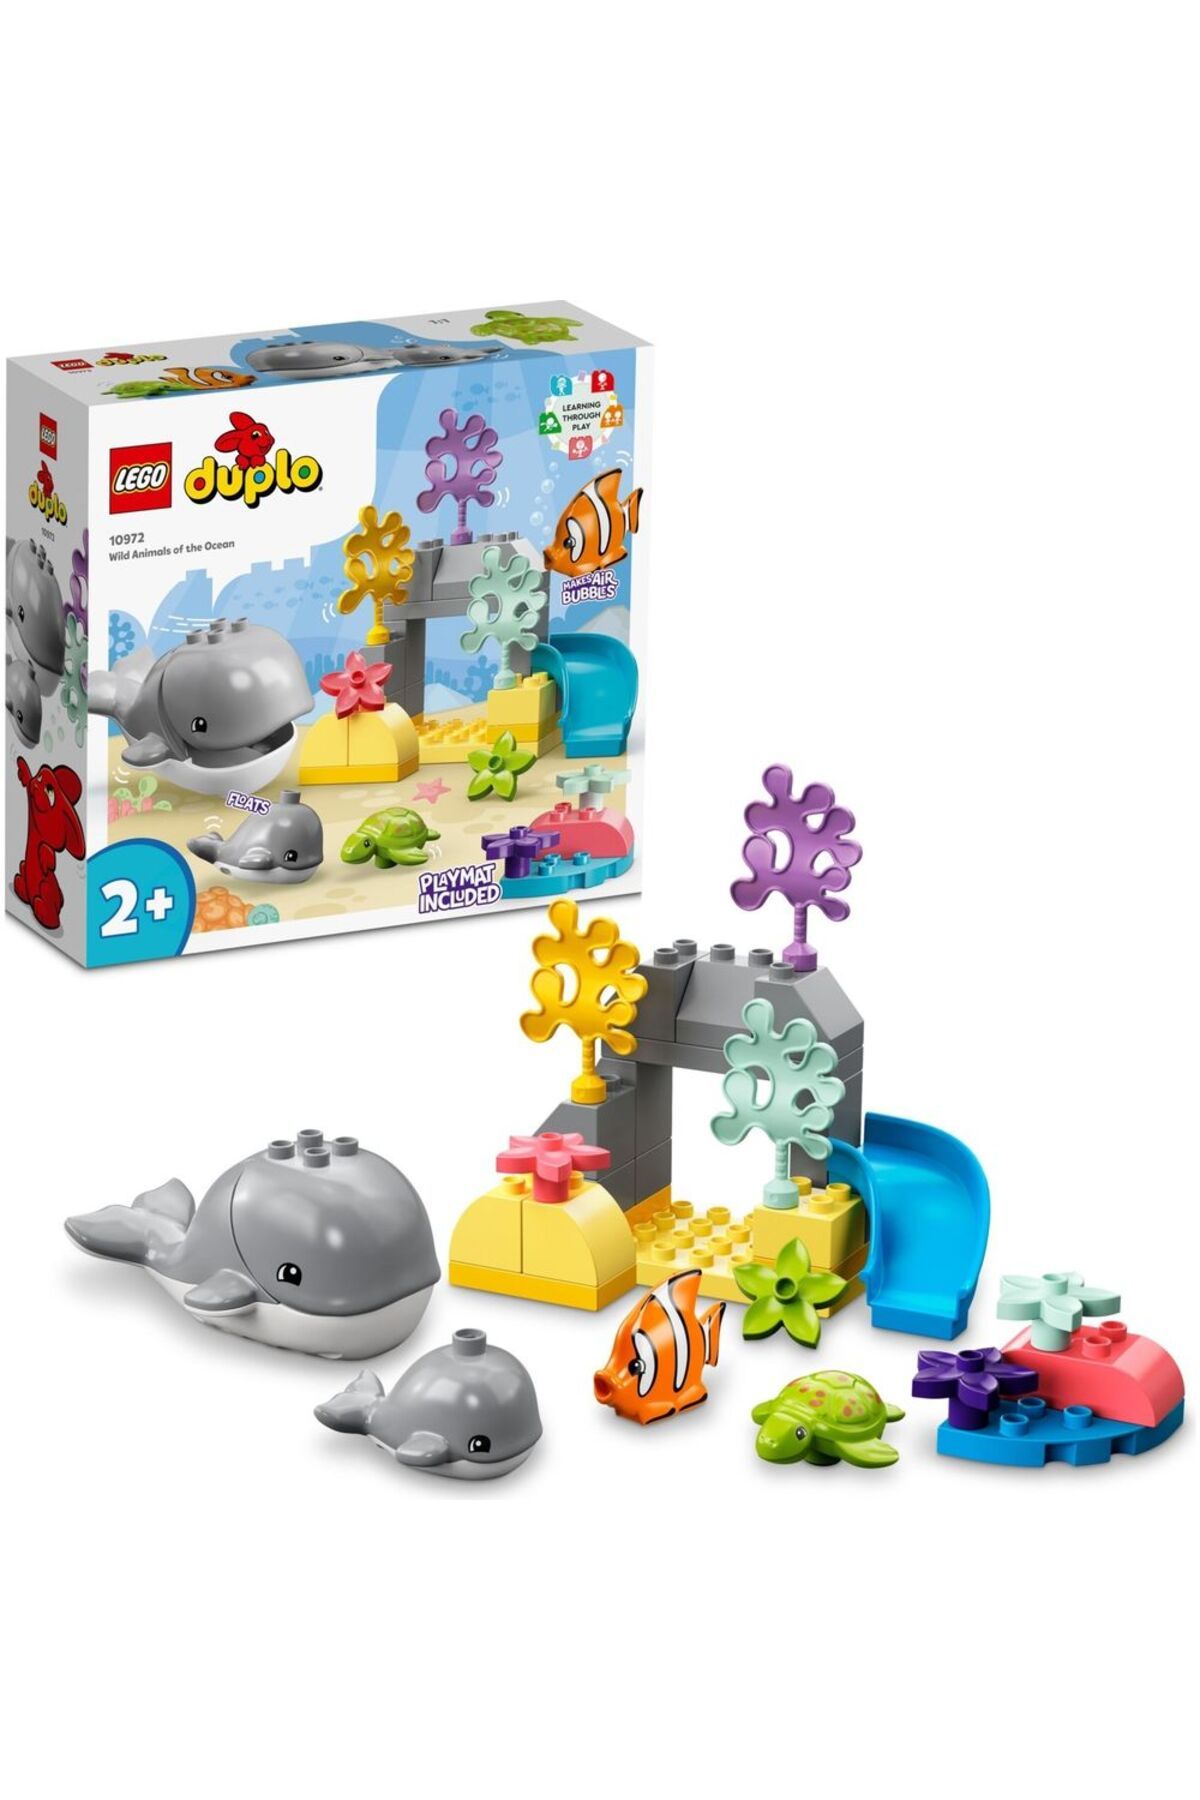 LEGO ® DUPLO® Vahşi Okyanus Hayvanları 10972 - 2 Yaş ve Üzeri Çocuklar için Yapım Seti (32 Parça)